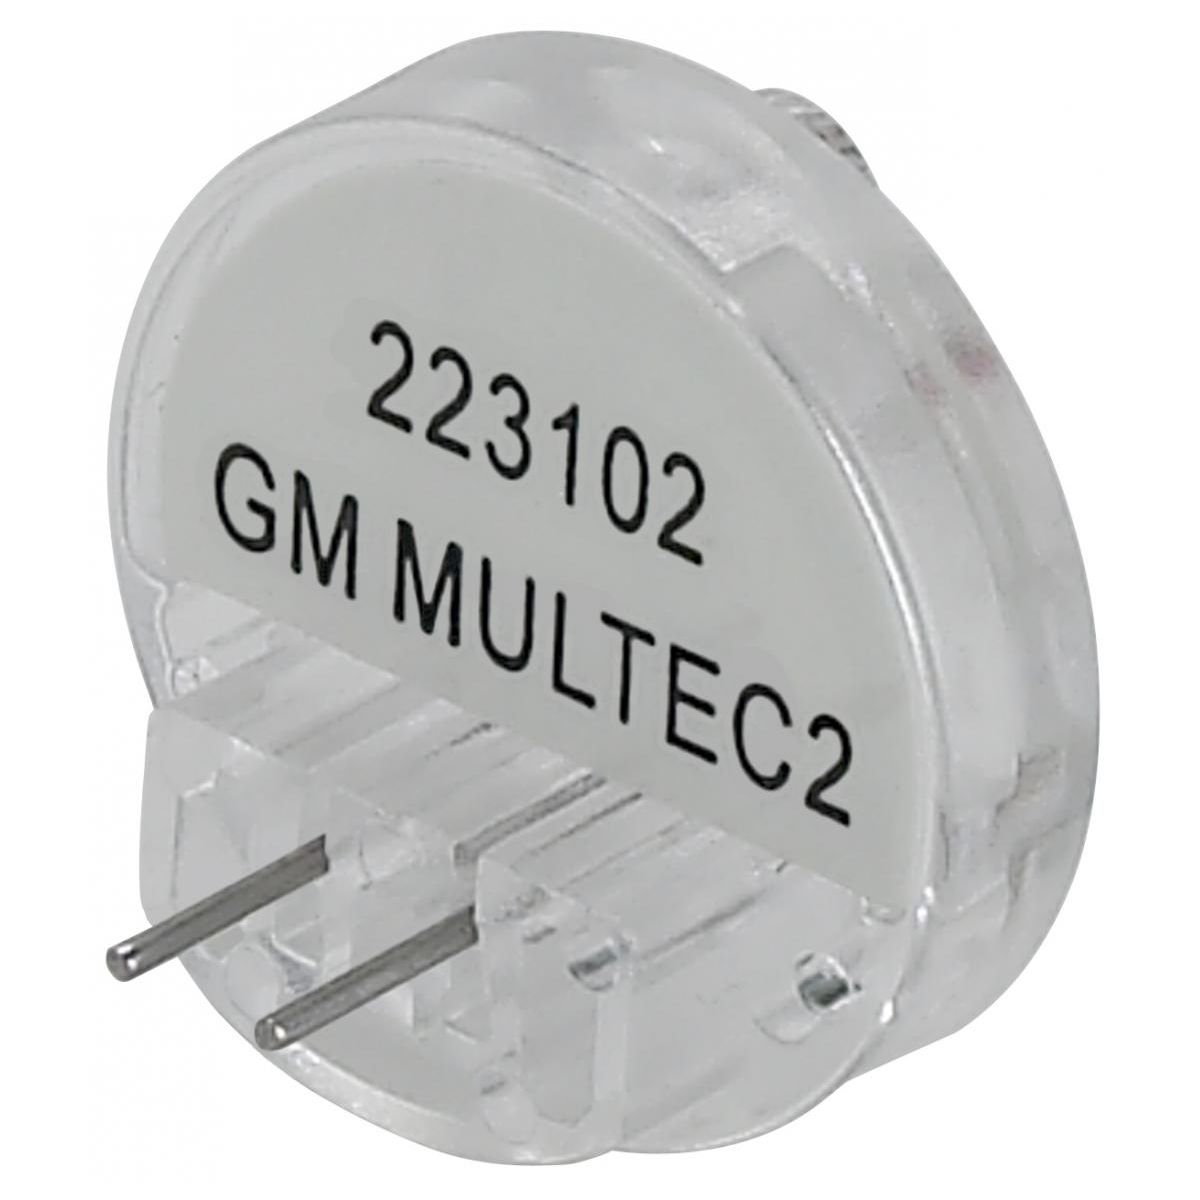 Noid Lite for GM Multec 2 Injectors